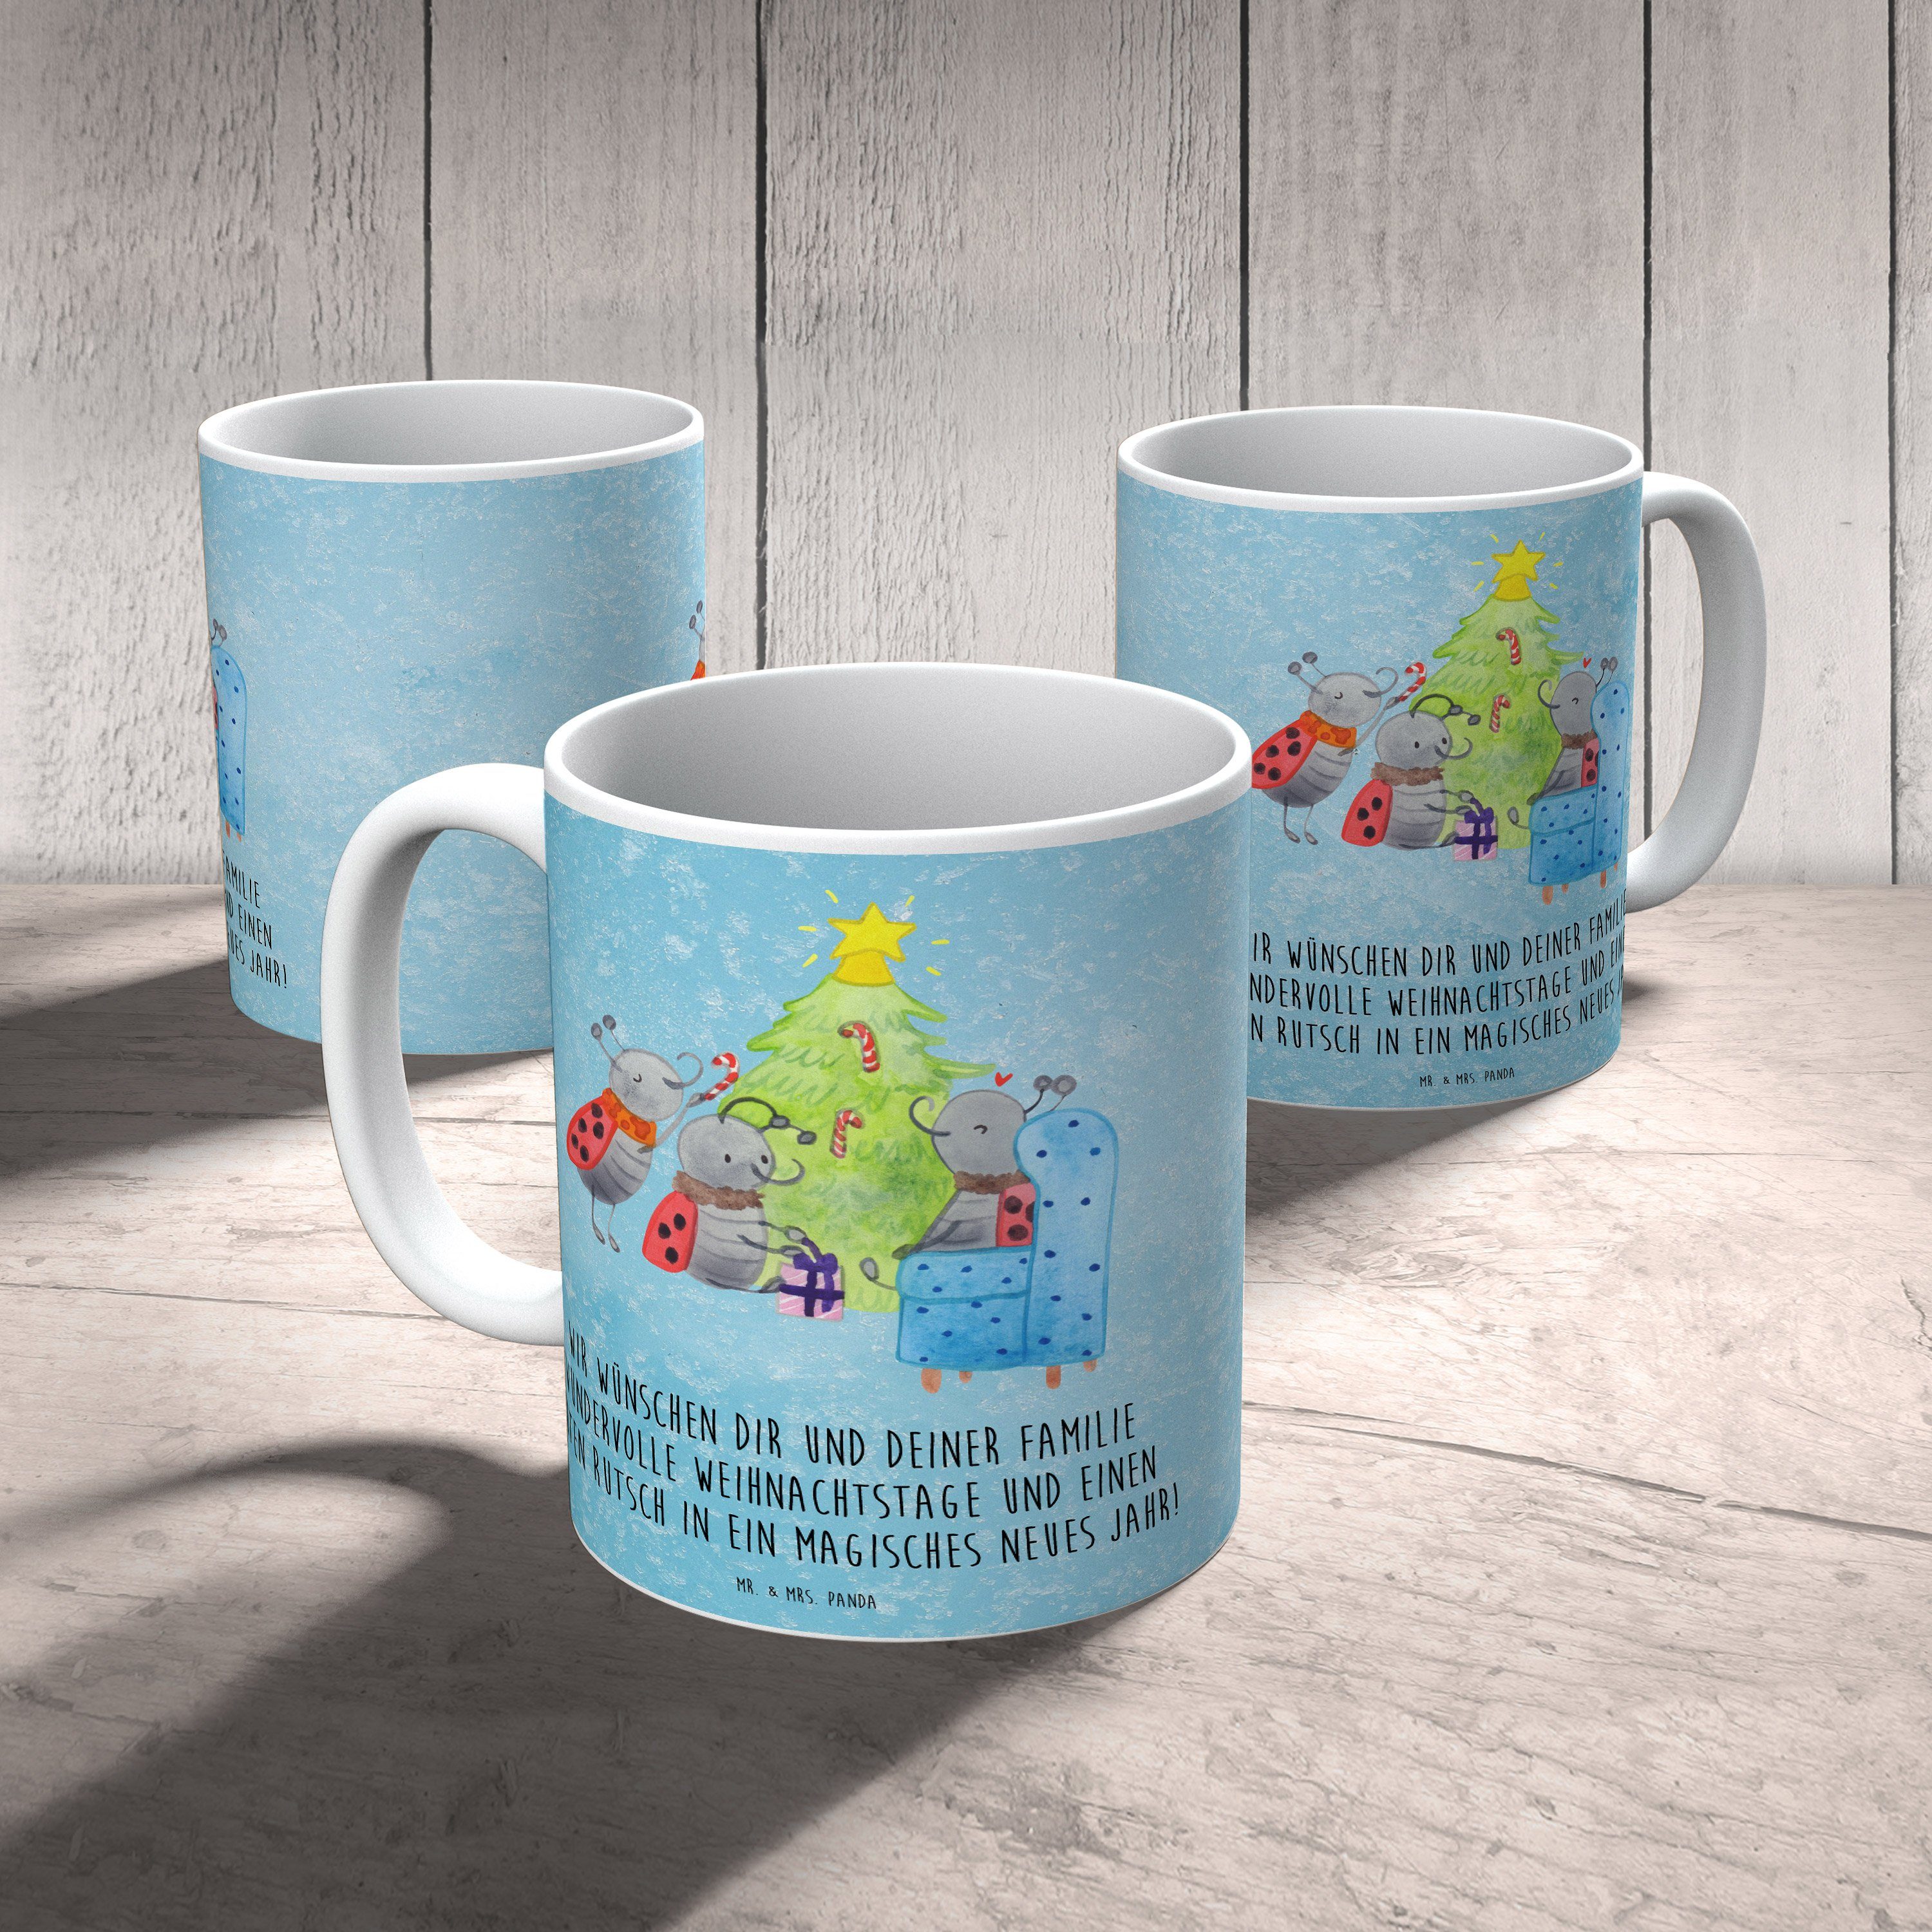 Mr. & Mrs. Panda Tasse Weihnachten Smörle - Eisblau - Geschenk, Kaffeebecher, Büro Tasse, Ta, Keramik